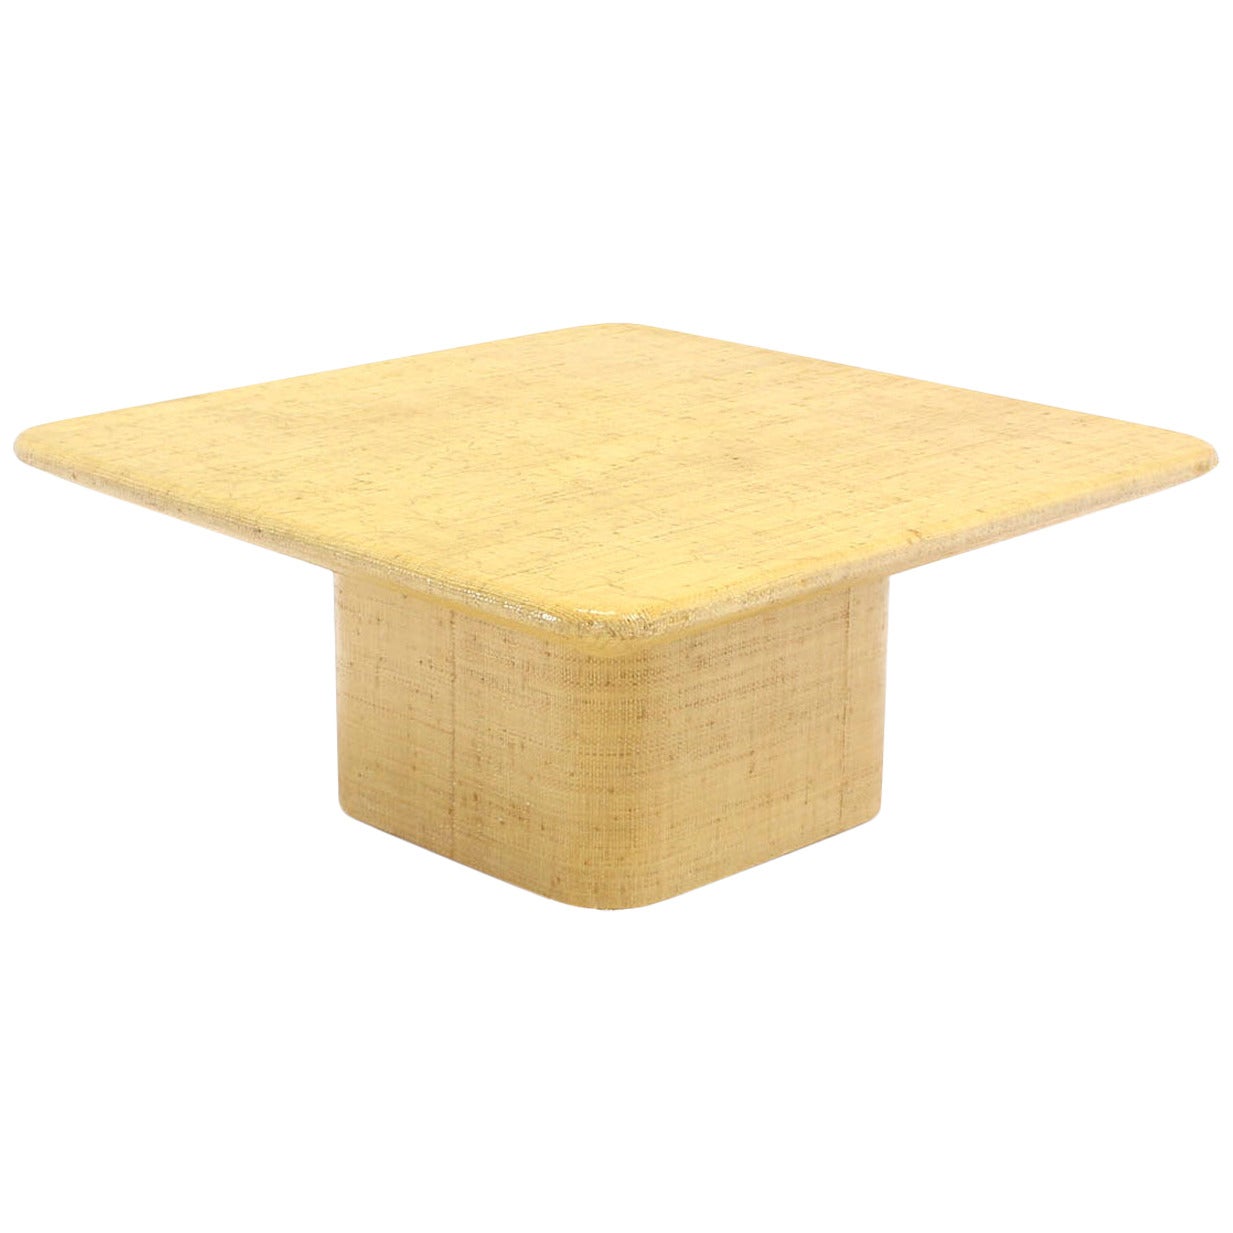 Table basse carrée recouverte de tissu sous bord biseauté.